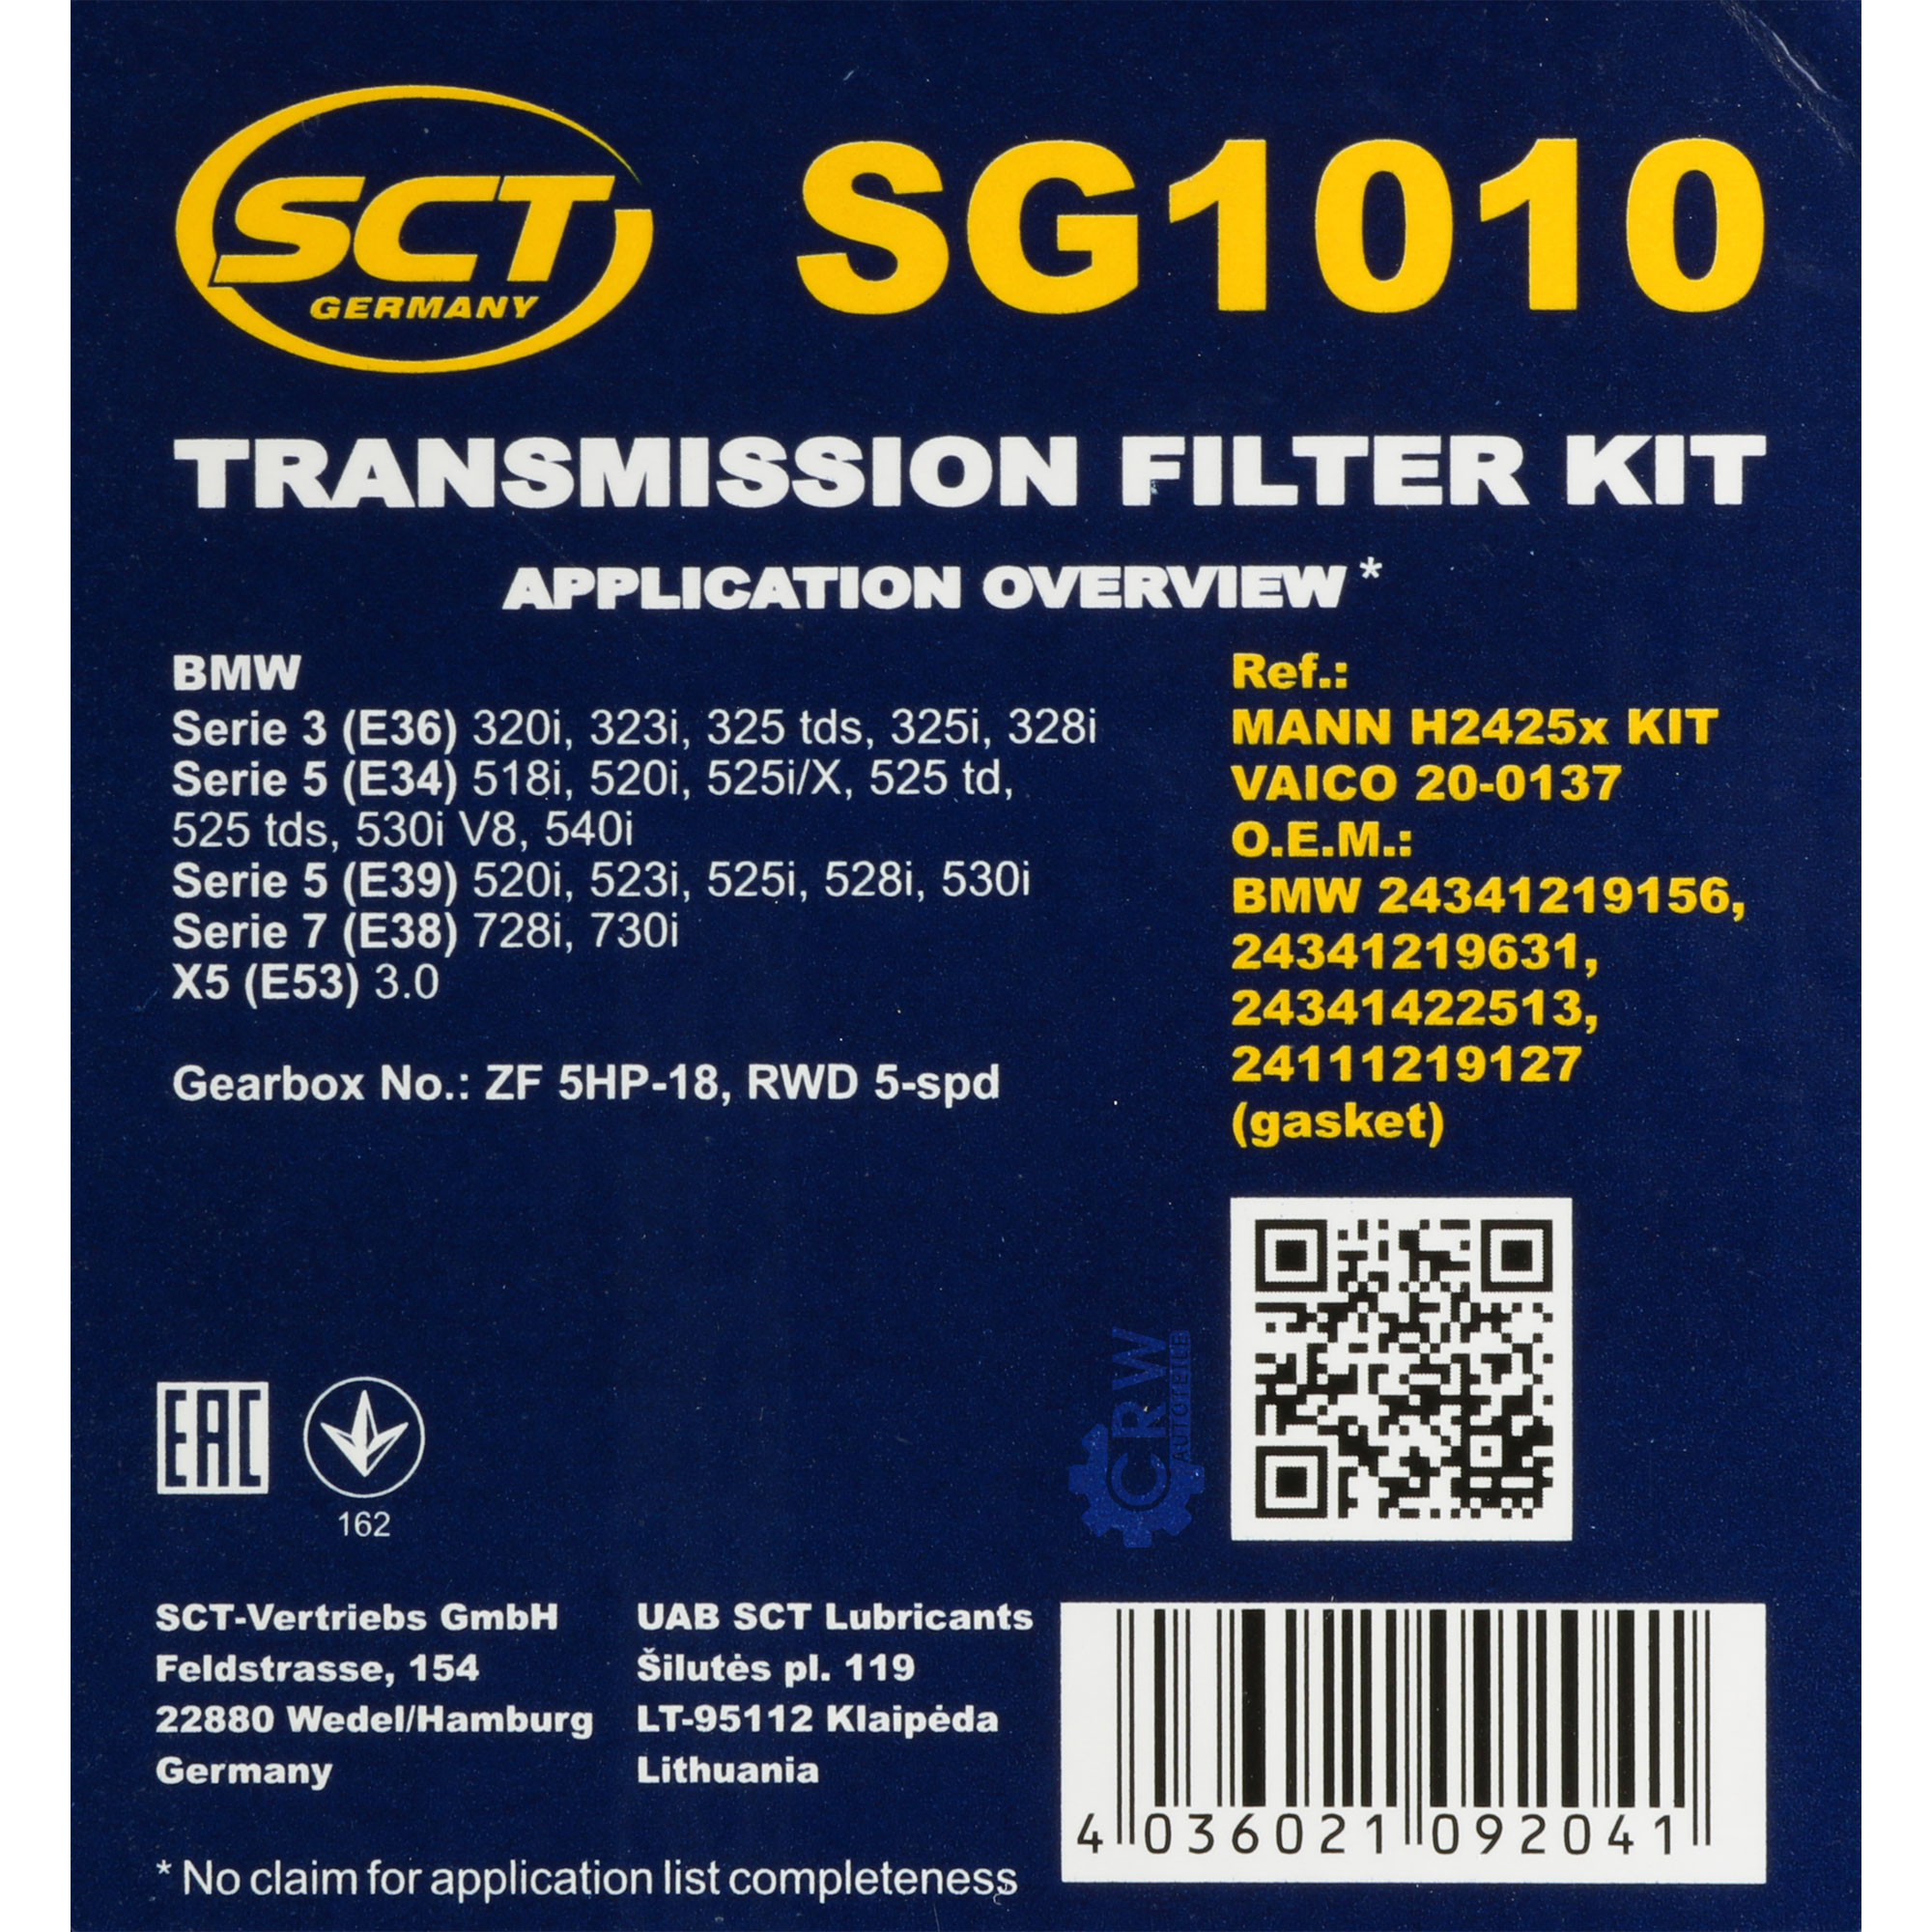 SCT Getriebeölfilter Hydraulikfiltersatz für Automatikgetriebe SG 1010